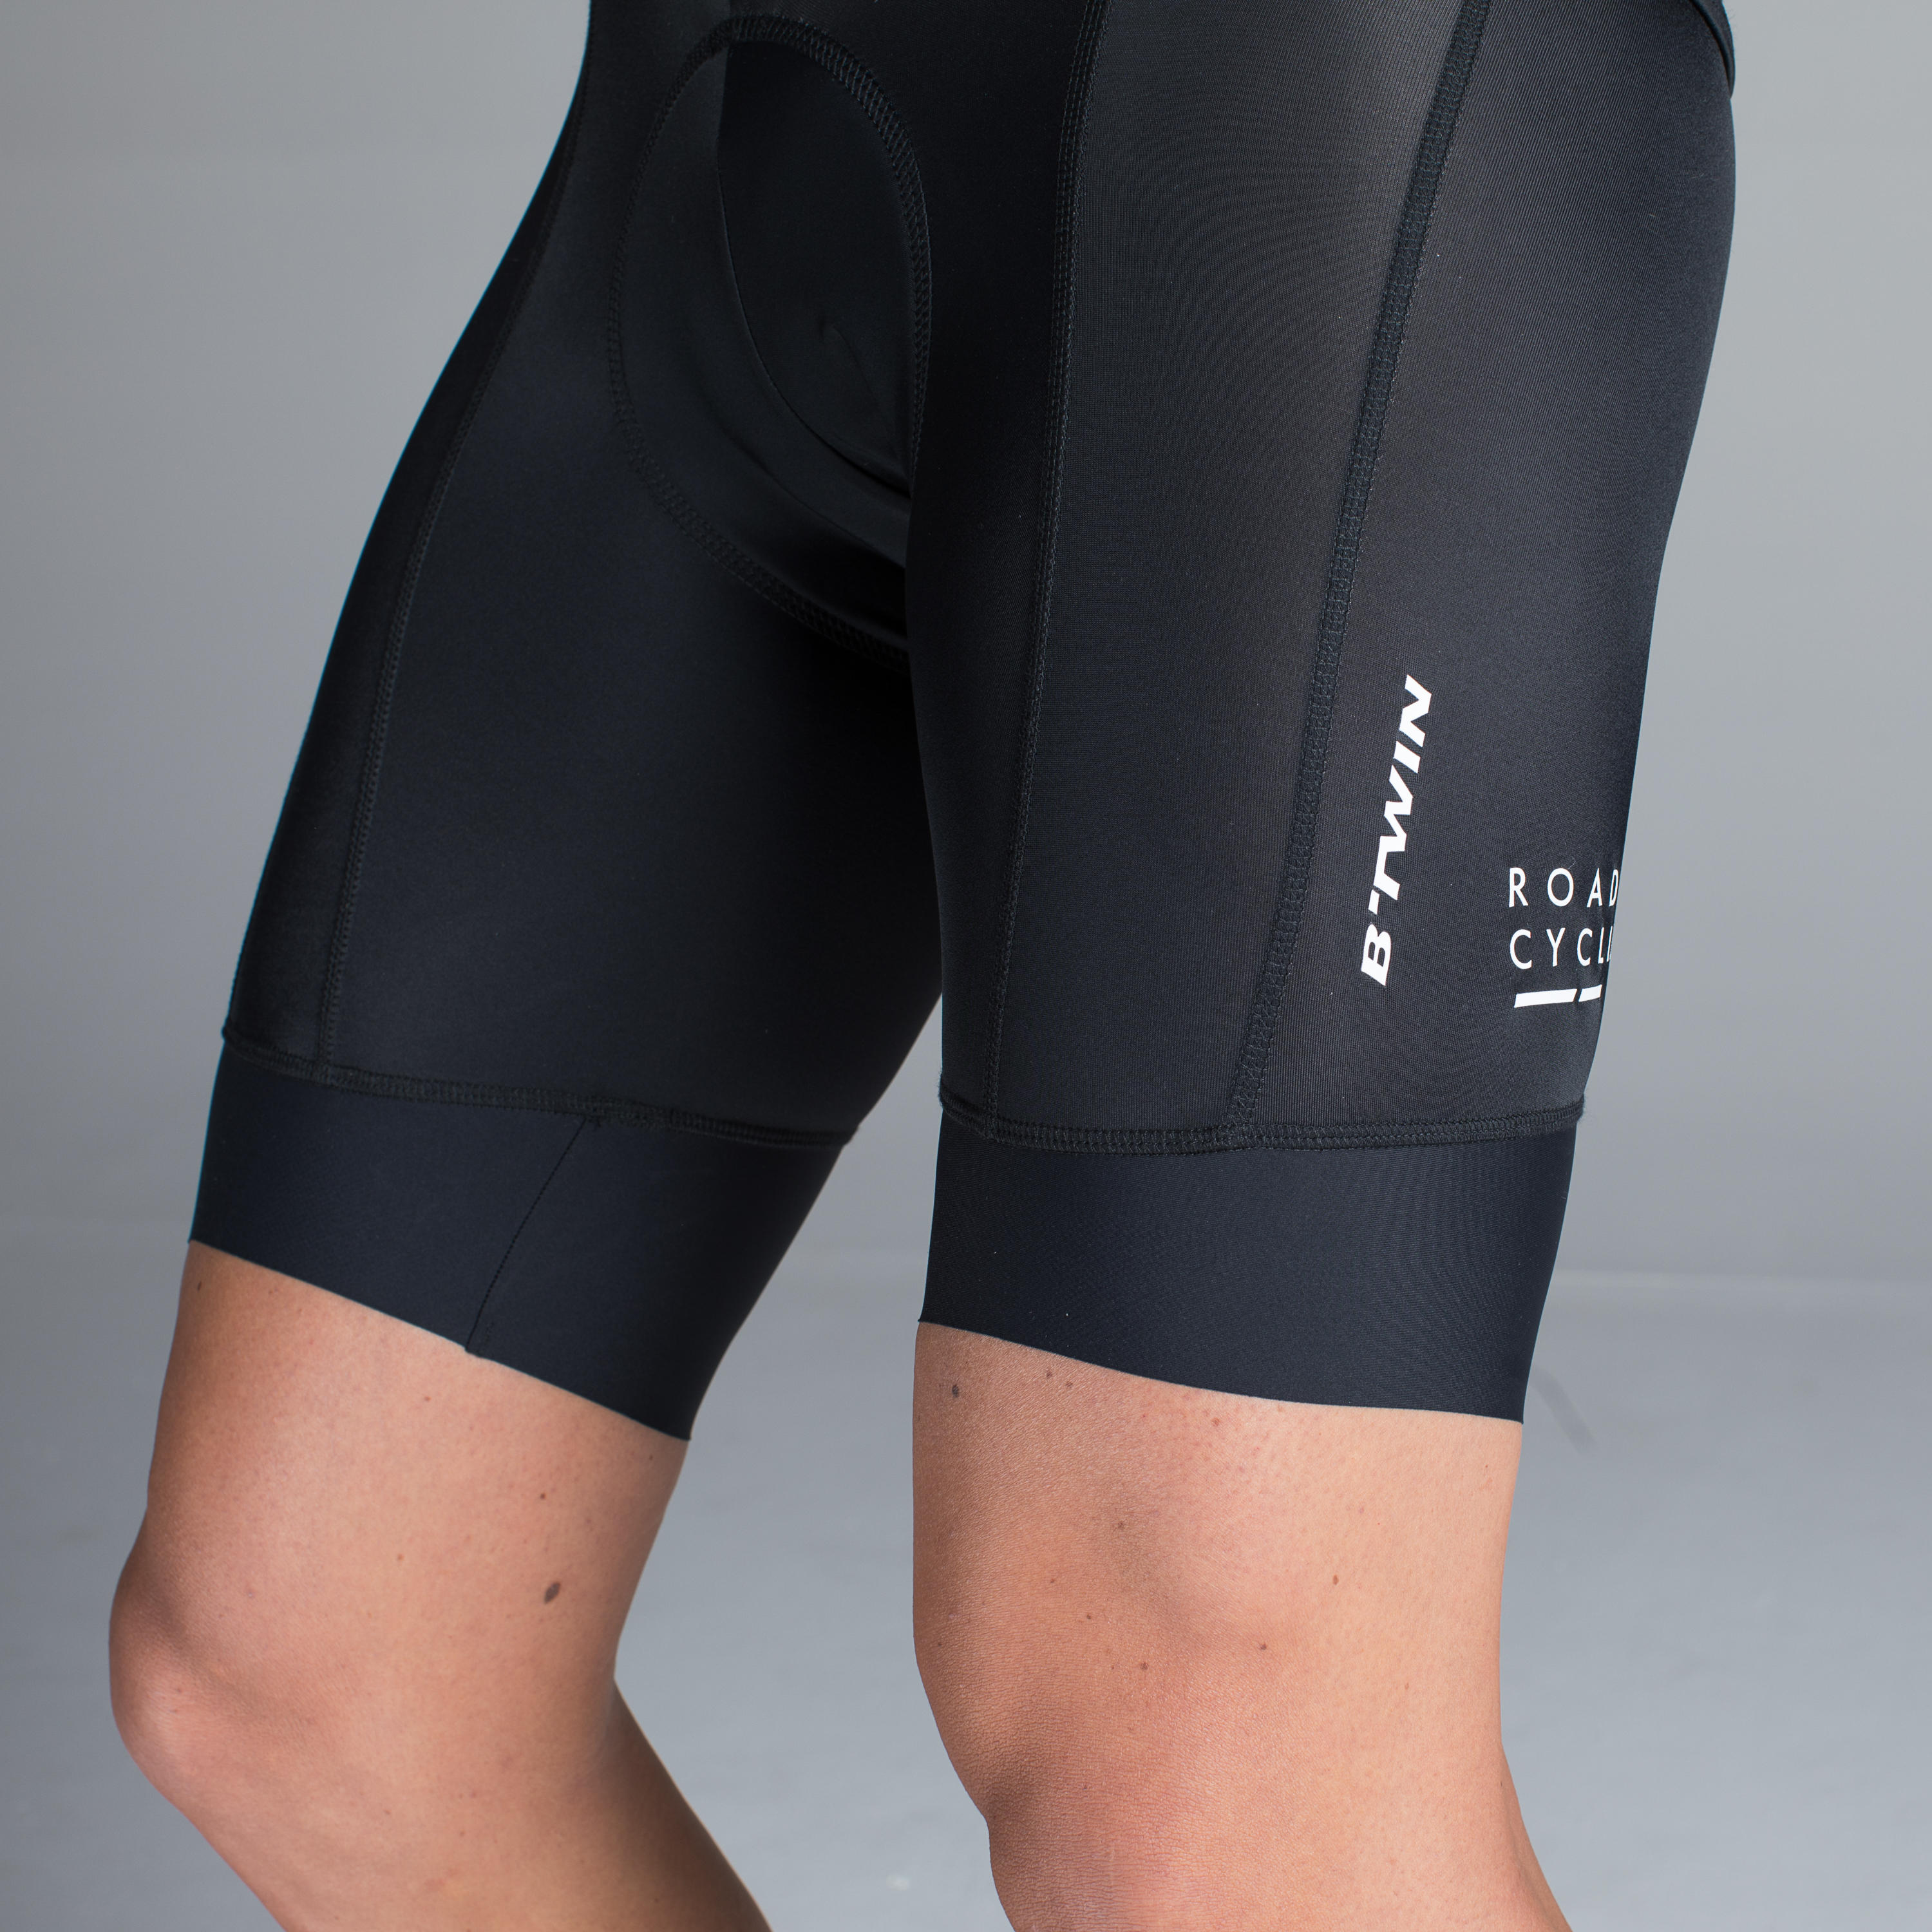 decathlon 900 bib shorts